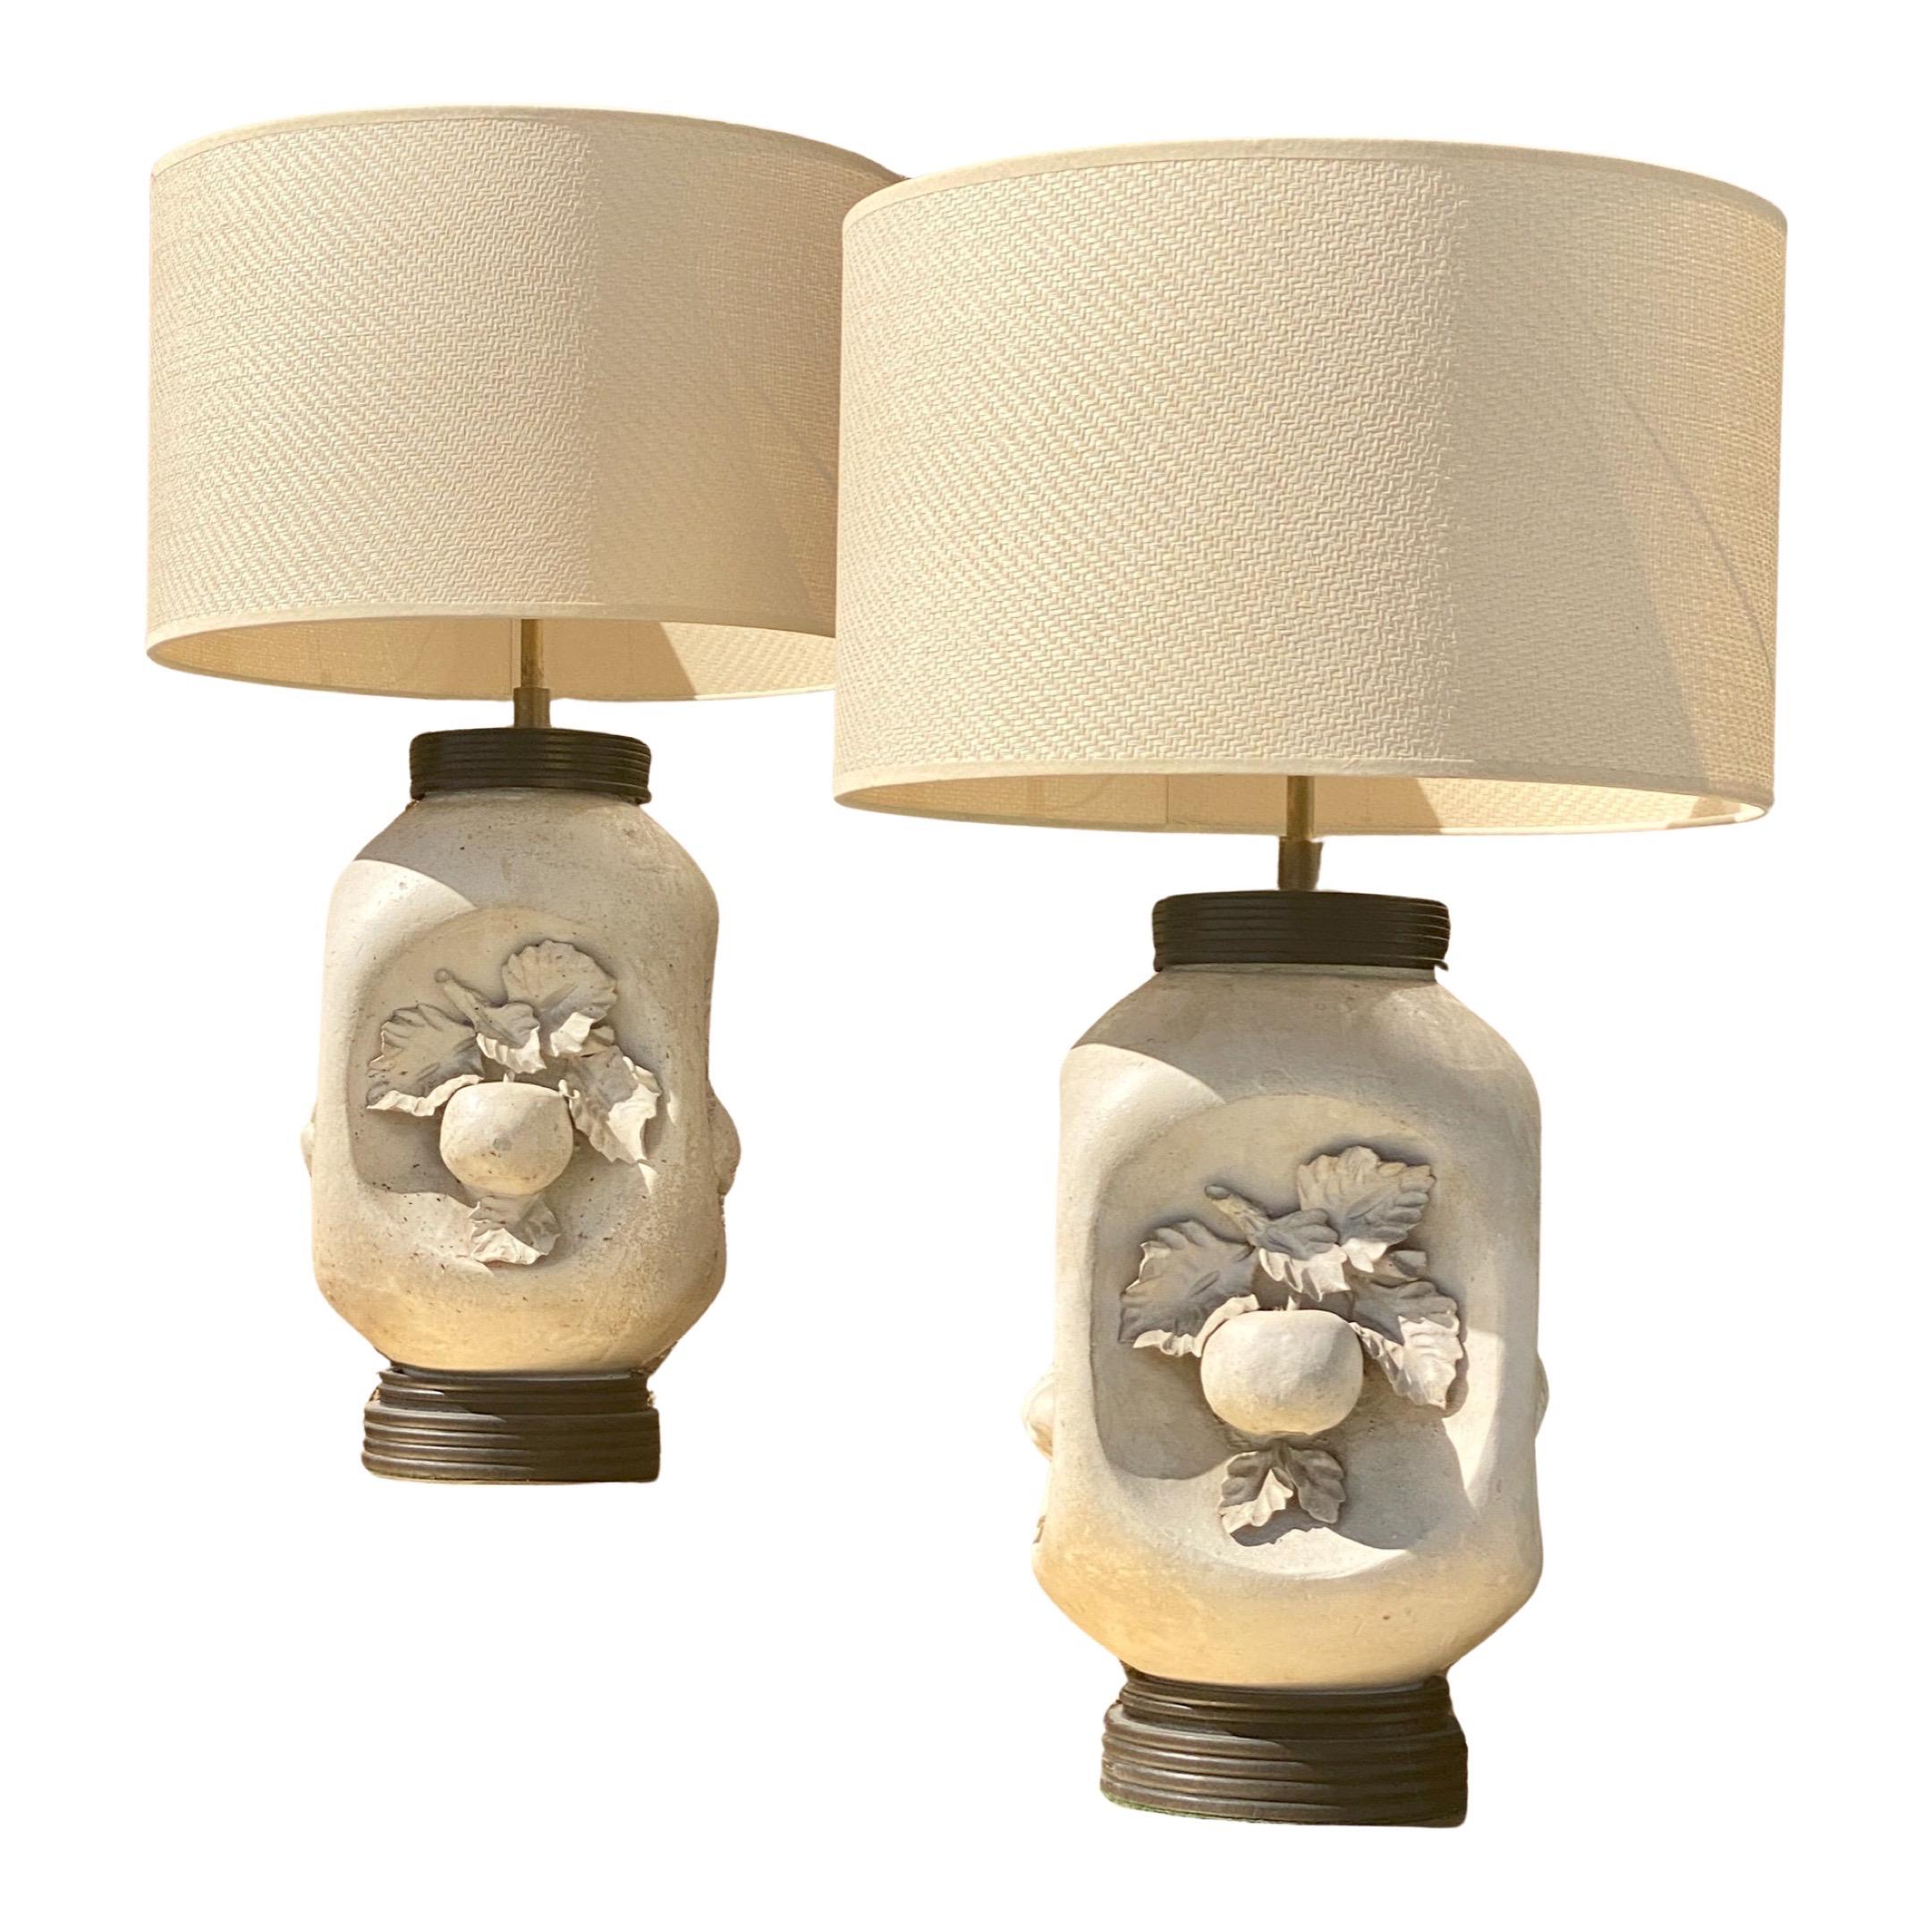 Une très belle et rare paire de lampes modernes du milieu du siècle fabriquées en Italie dans les années 1950. Biscuit mat de couleur blanc naturel avec des bases noires. L'installation électrique a été refaite à neuf avec de nouveaux cordons et des